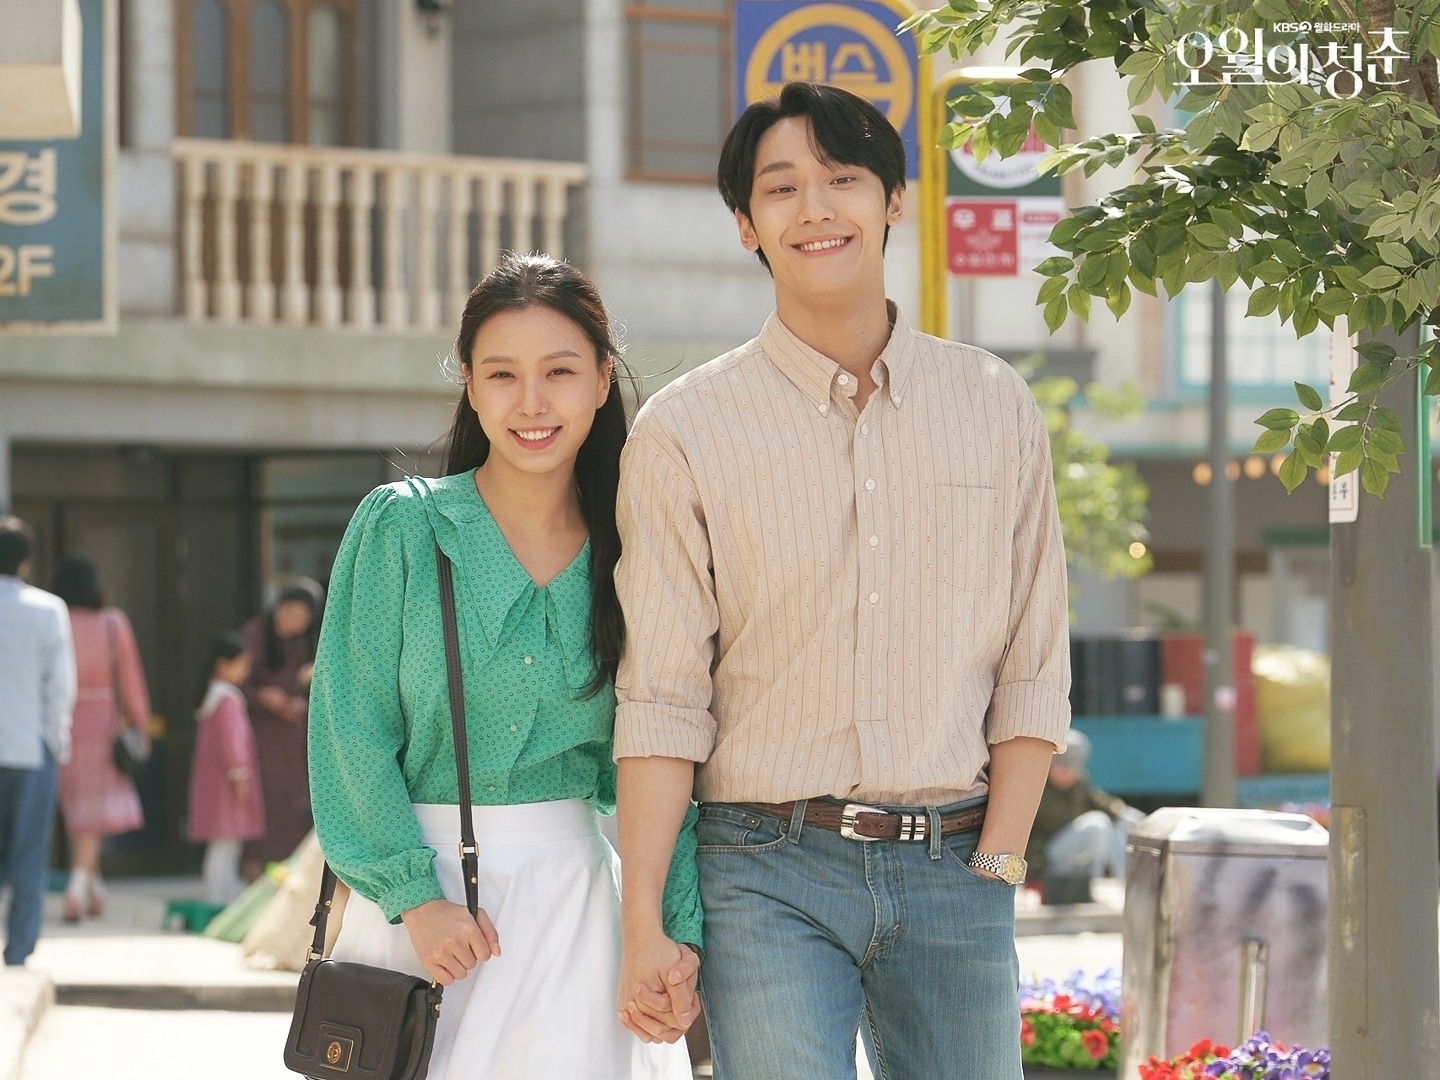 phim hay nhat cua lee do hyun 7 - 8 bộ phim hay nhất của “tân binh” Lee Do Hyun